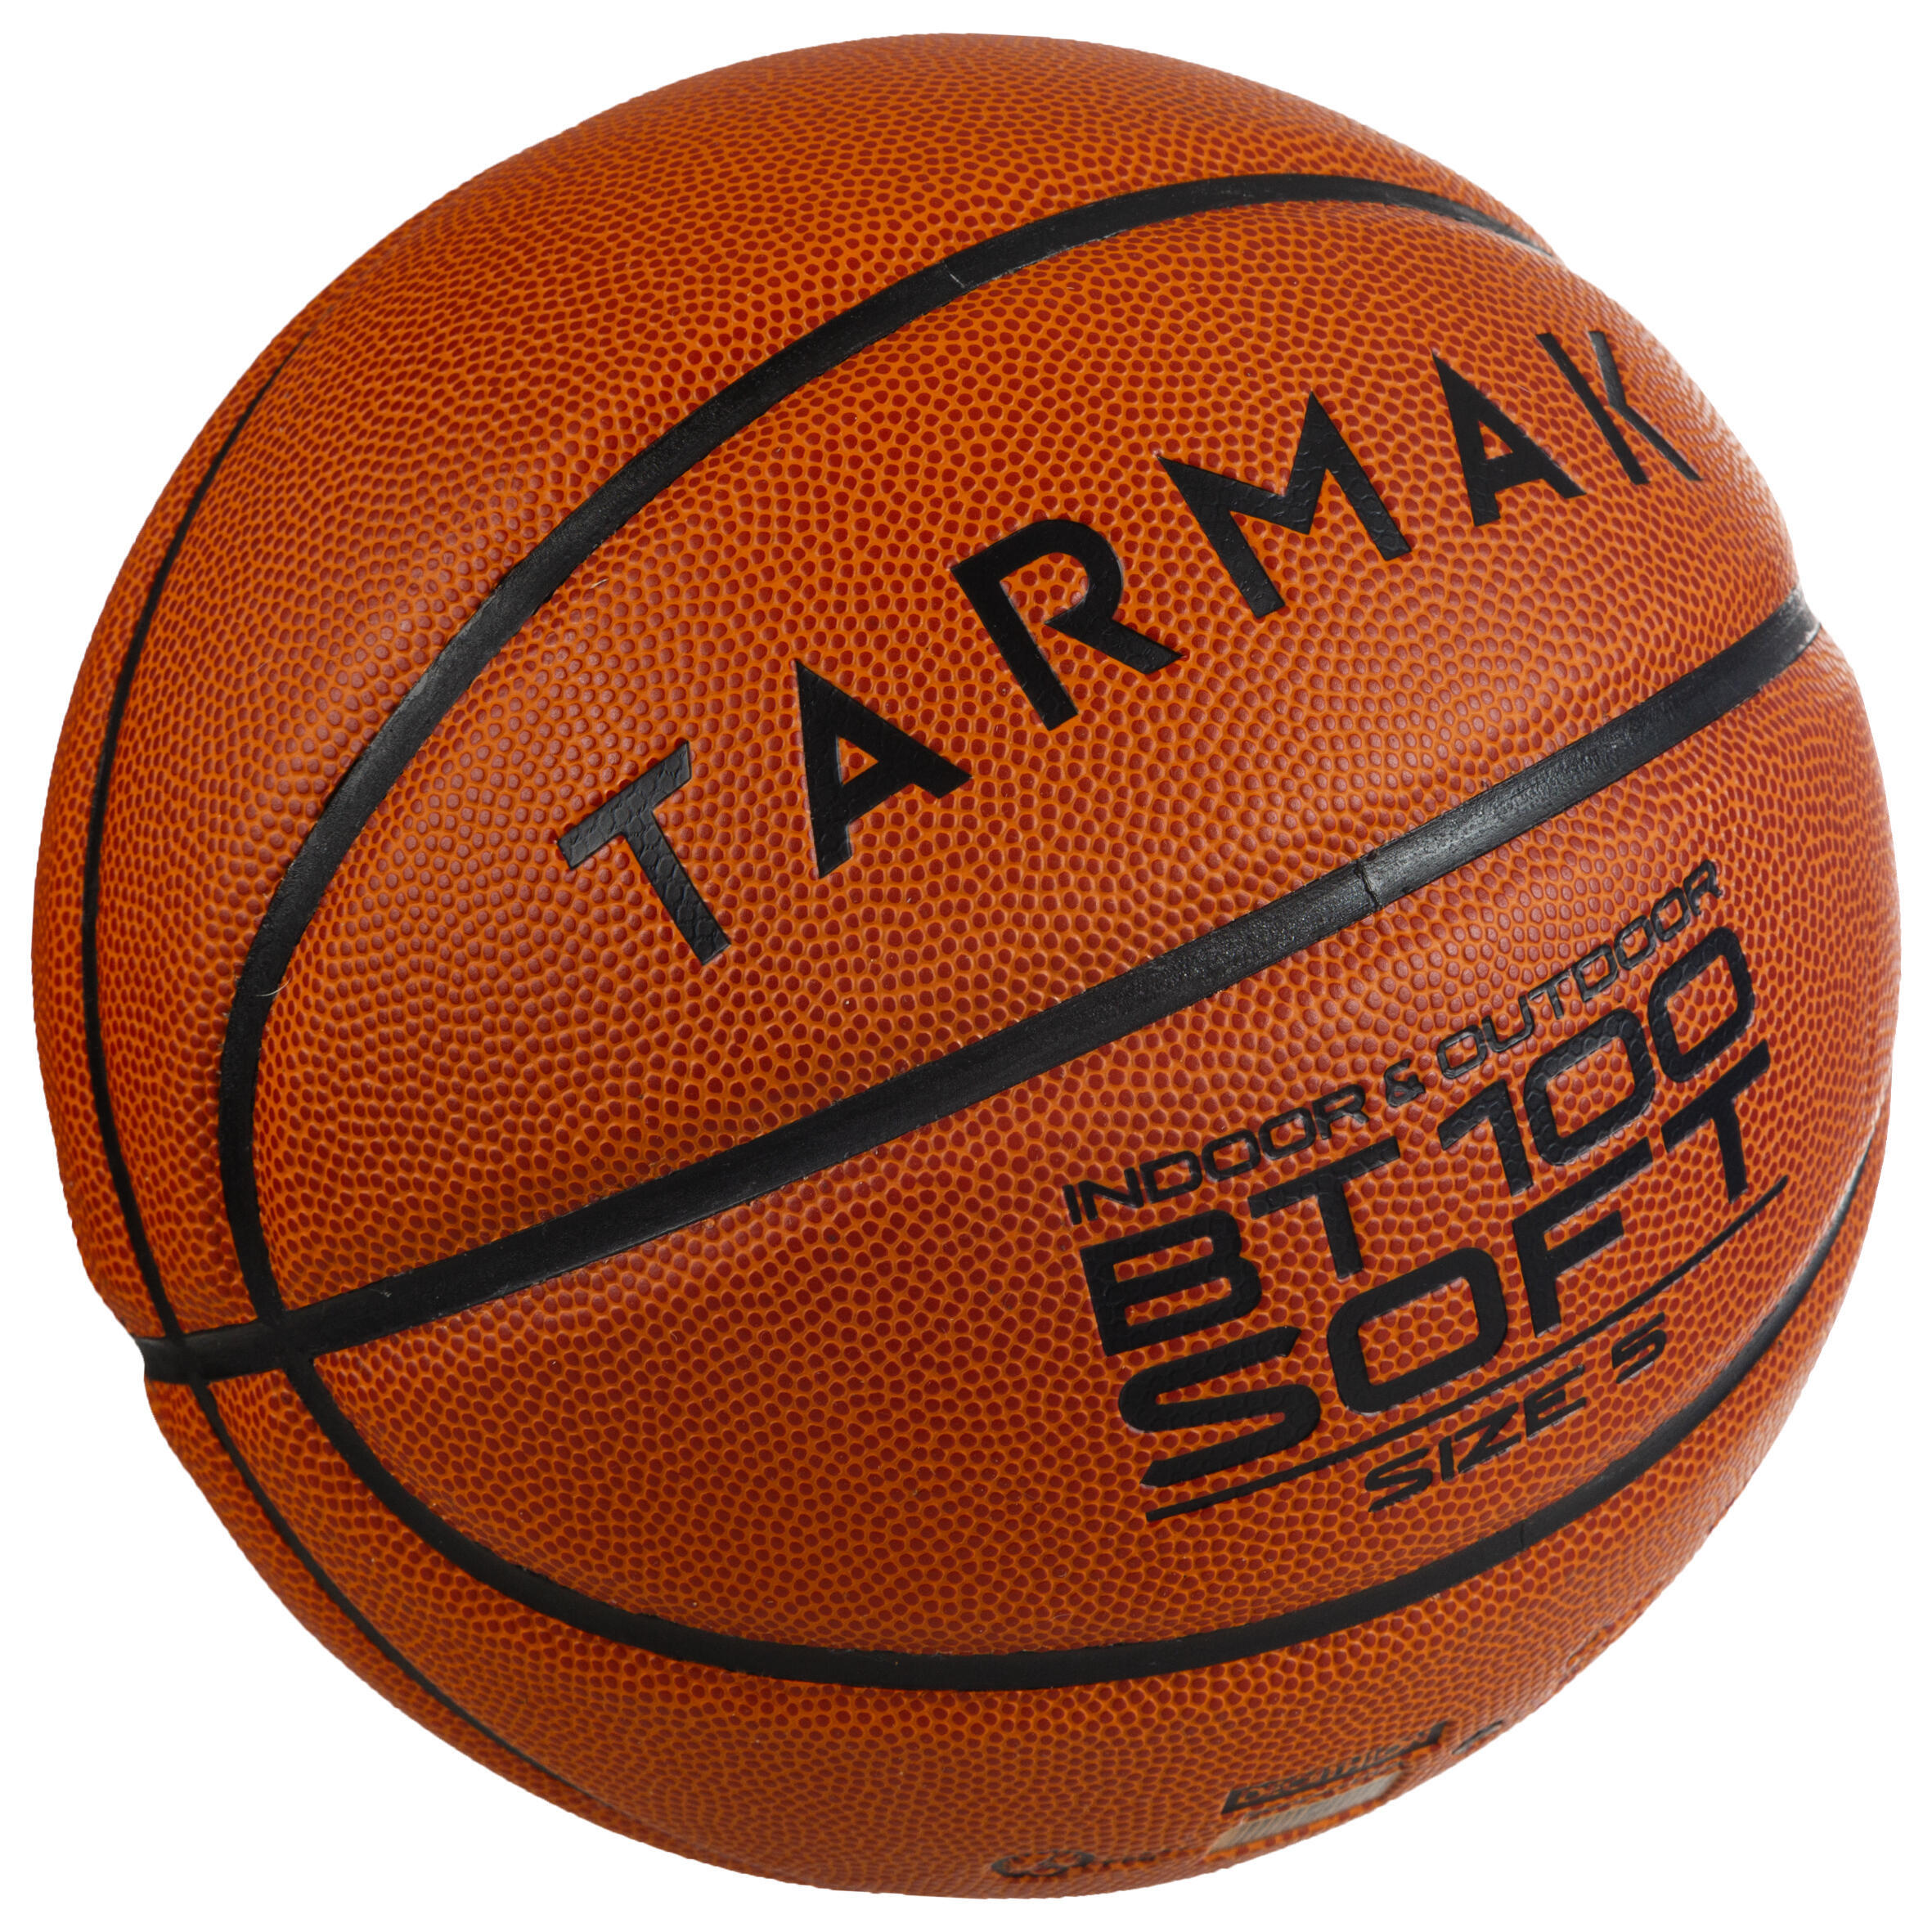 BT100 Kids' Size 5 Beginner Basketball, Under Age 10 - Orange 2/5